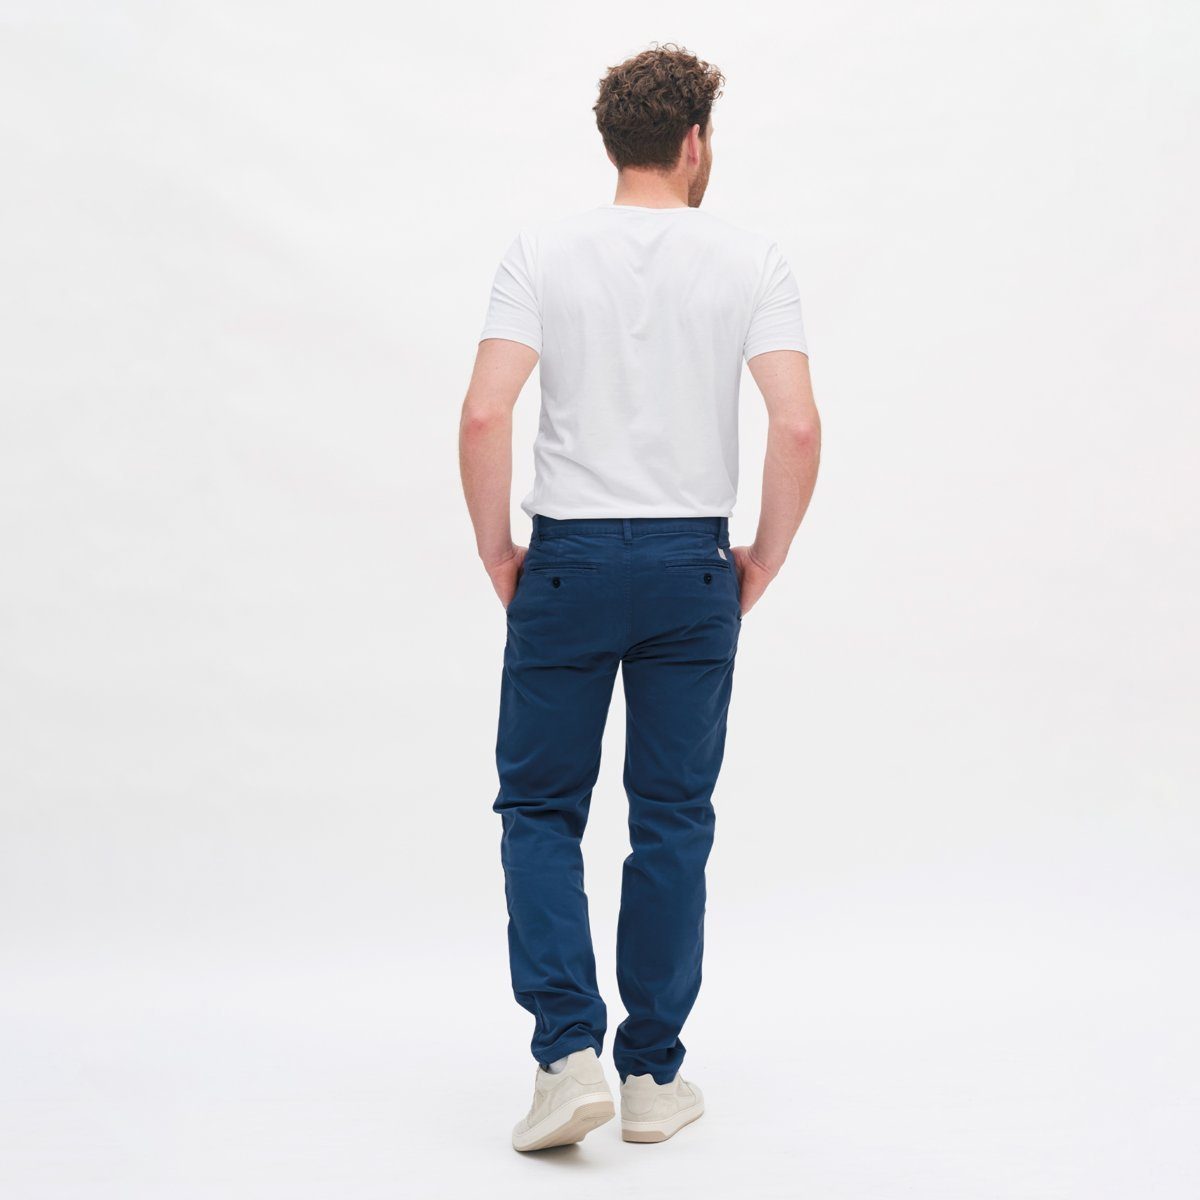 LIVING CRAFTS Bequeme Bio-Baumwolle Elasthan mit kombinierbare NORIK Jeans Fjord aus Vielseitig Nordic Herren-Chinos